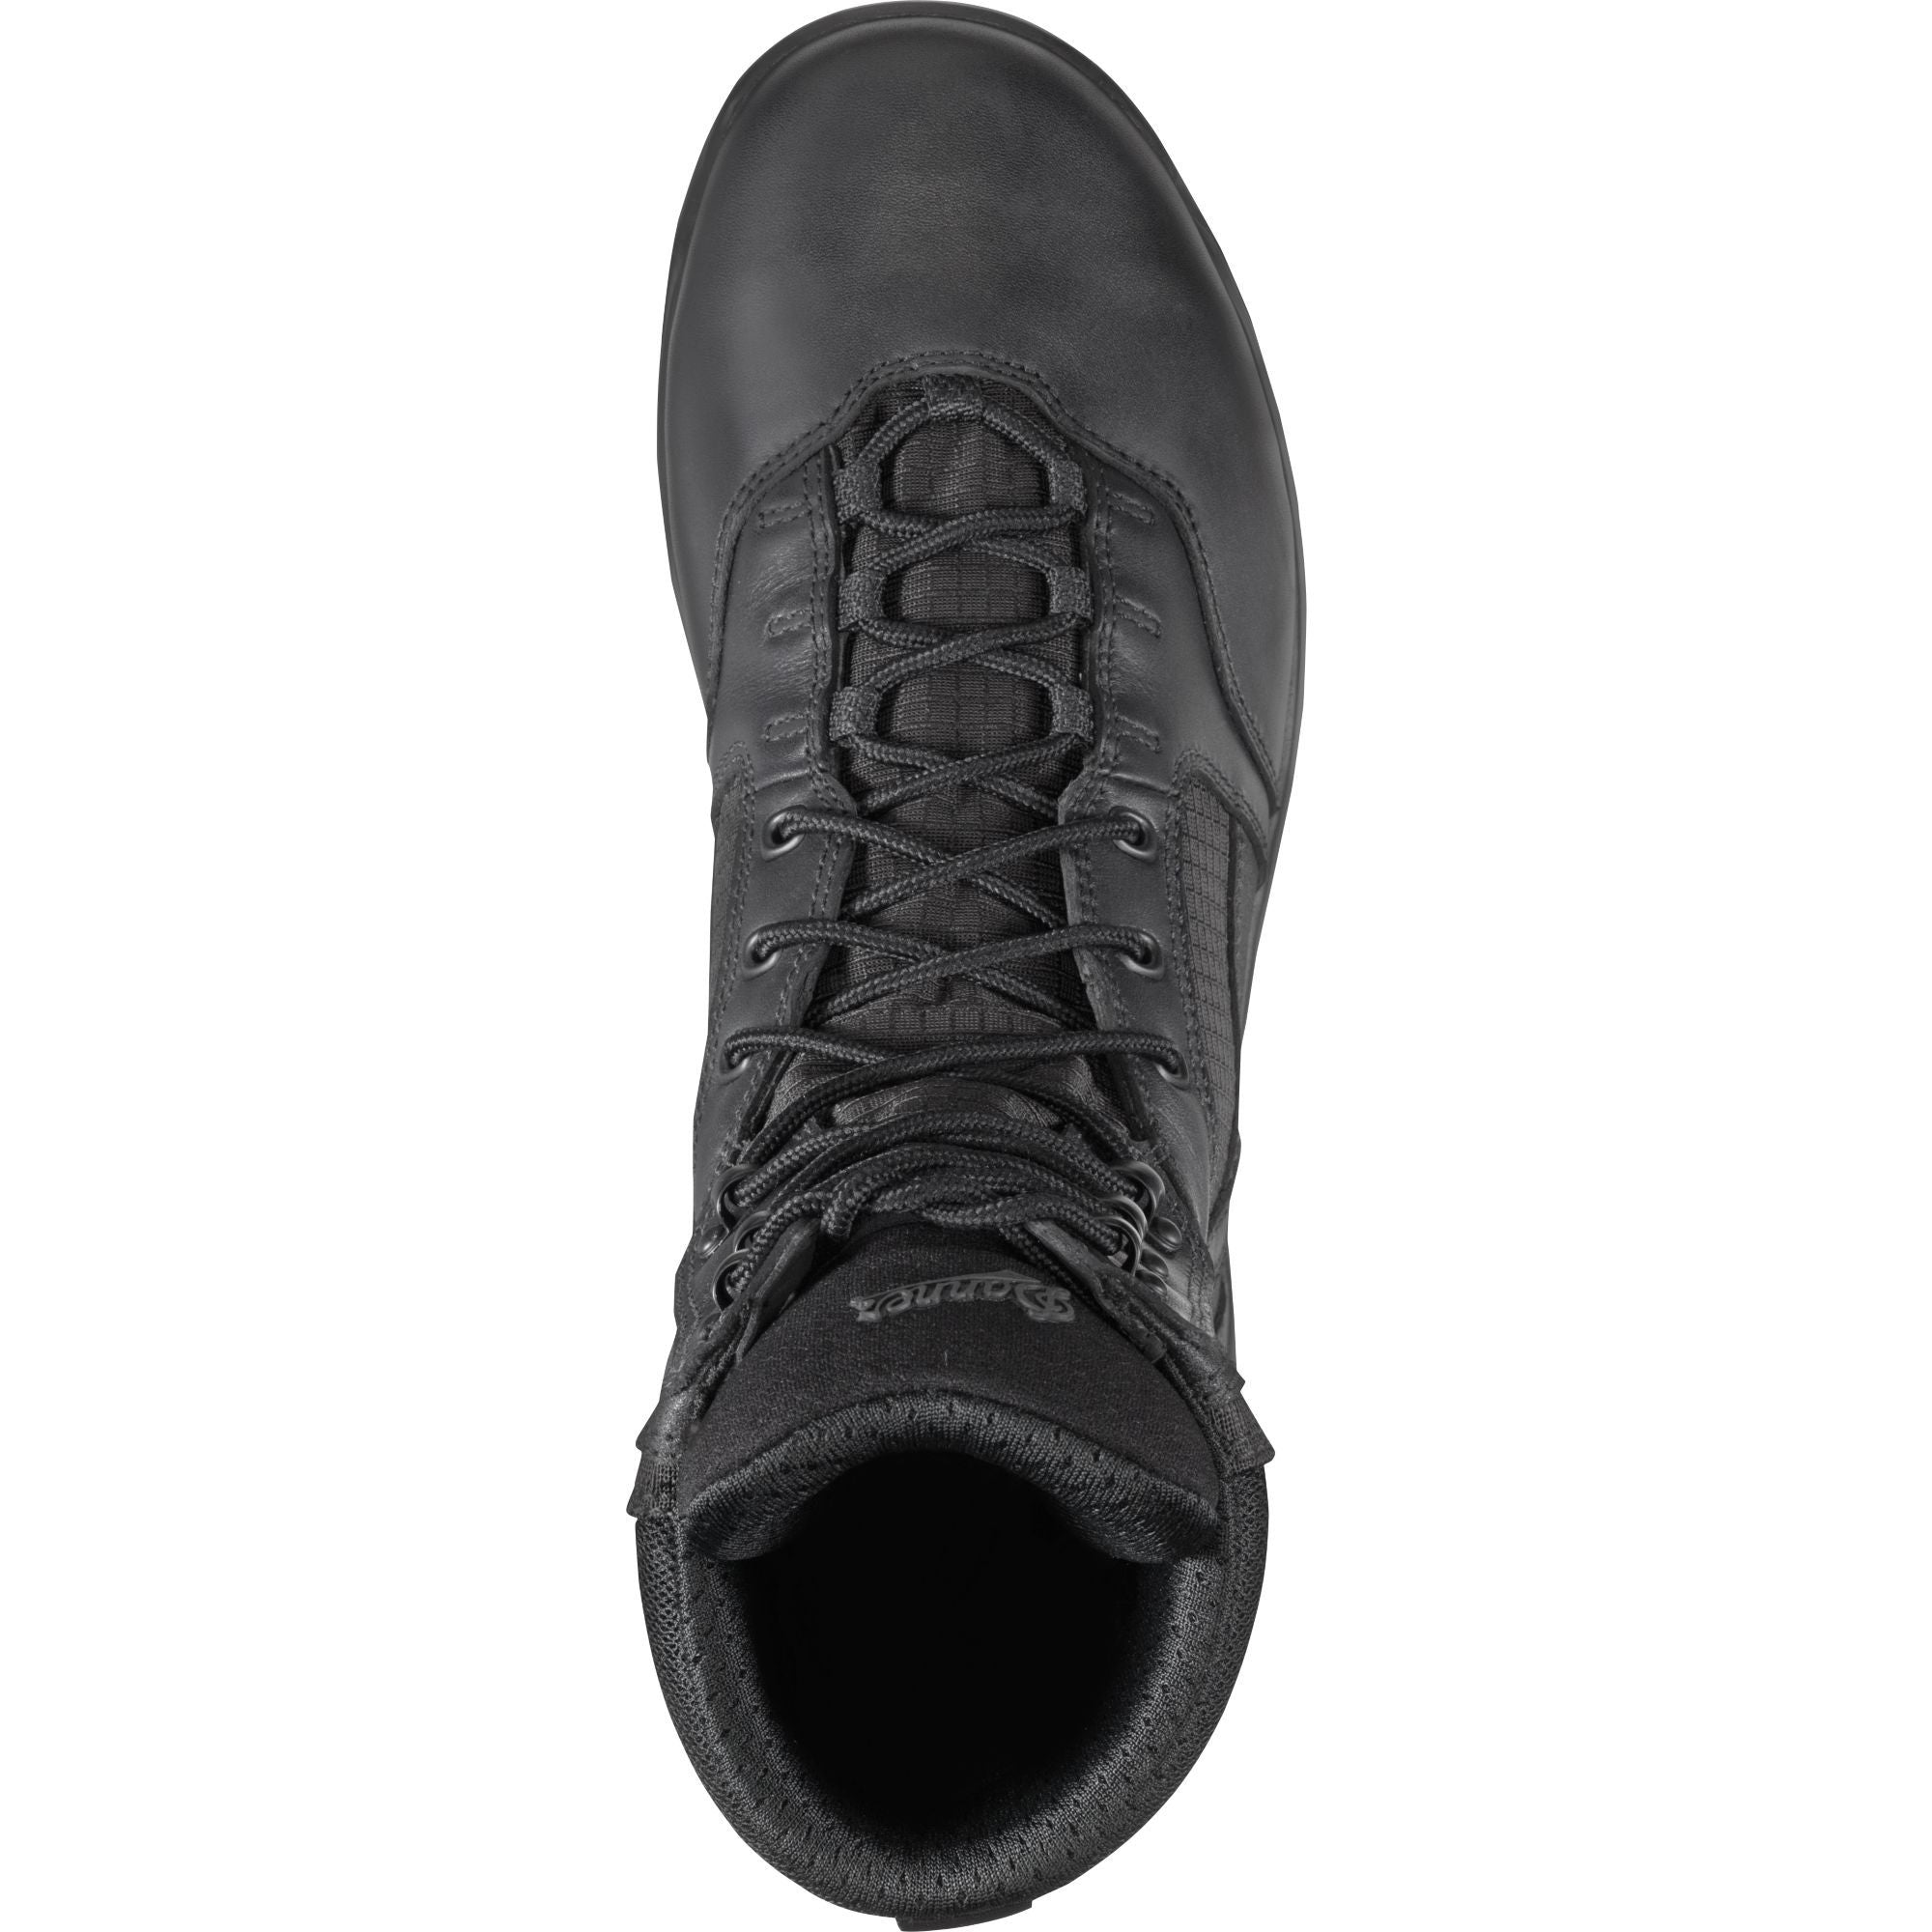 Danner Men's Kinetic 8" Waterproof Duty Boot - Black - 28010  - Overlook Boots